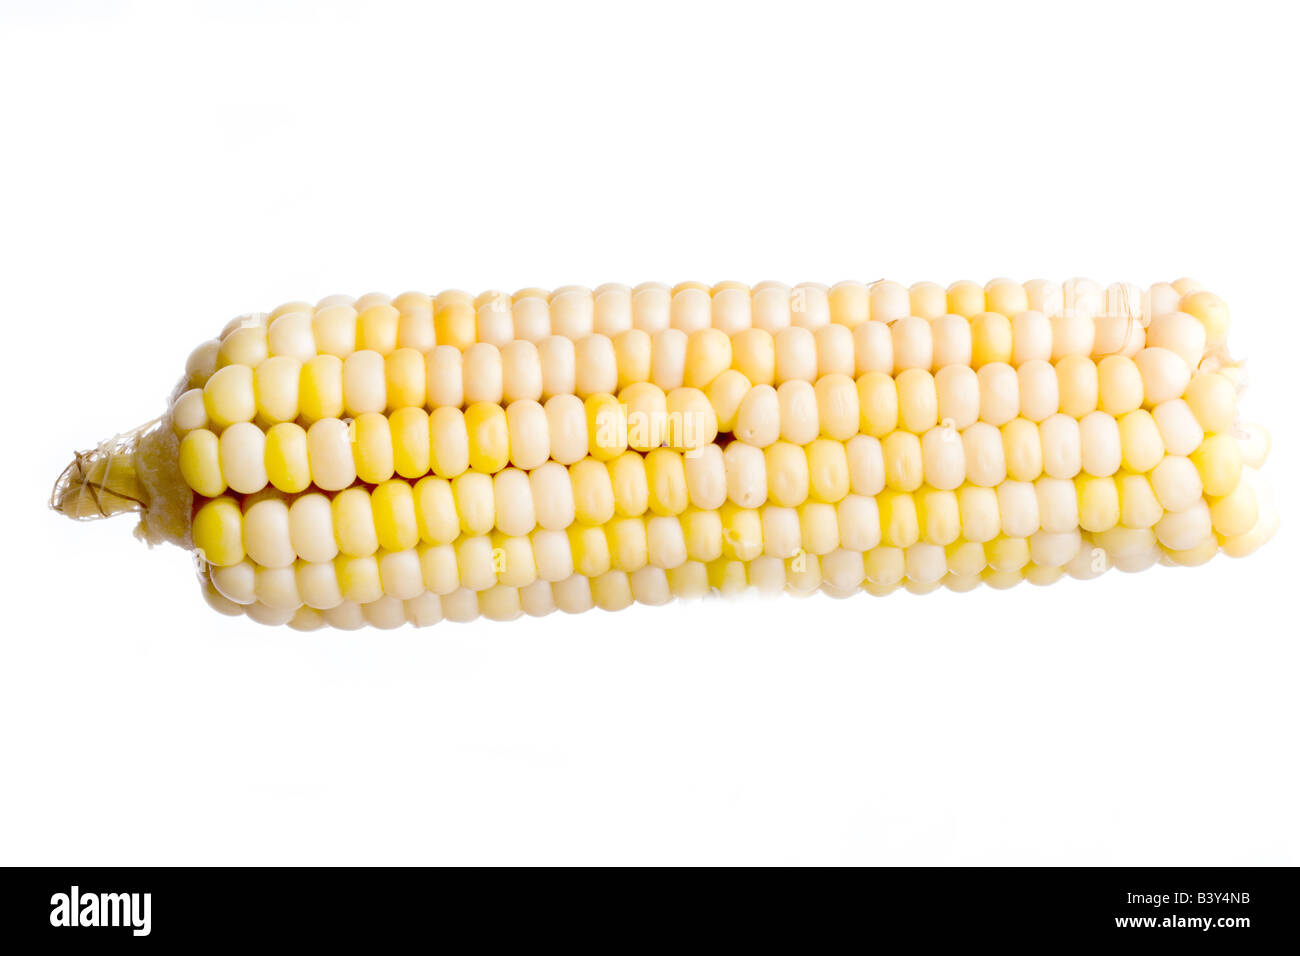 Corn isolated on white background Stock Photo